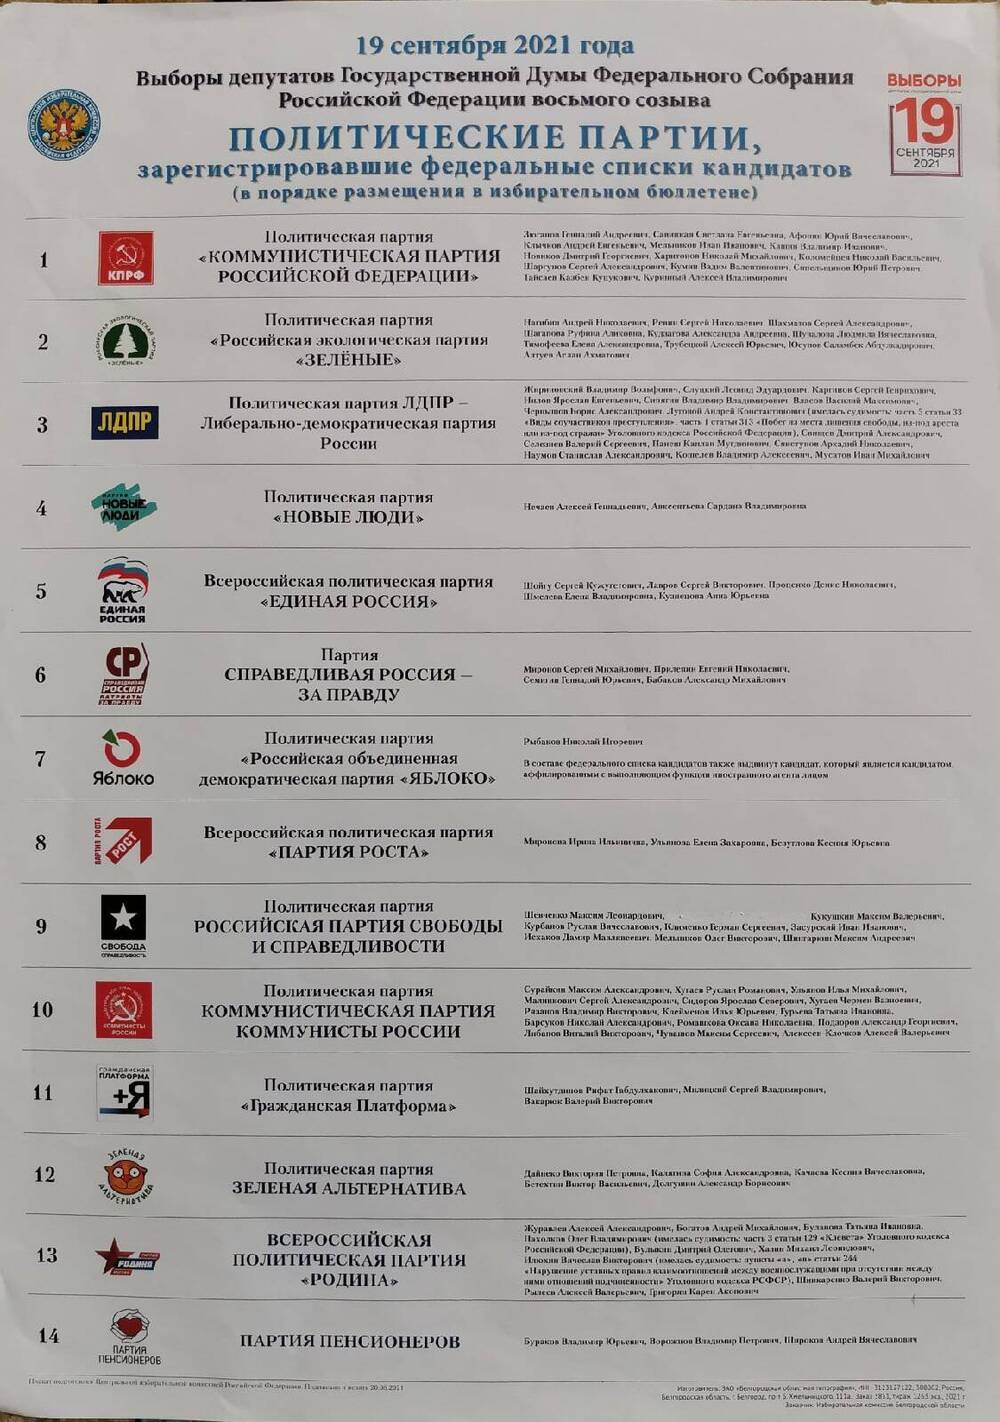 Плакат информационный. Политические партии, зарегистрировавшие федеральные списки кандидатов на выборы депутатов Государственной Думы Федерального собрания РФ 19 сентября 2021 года.